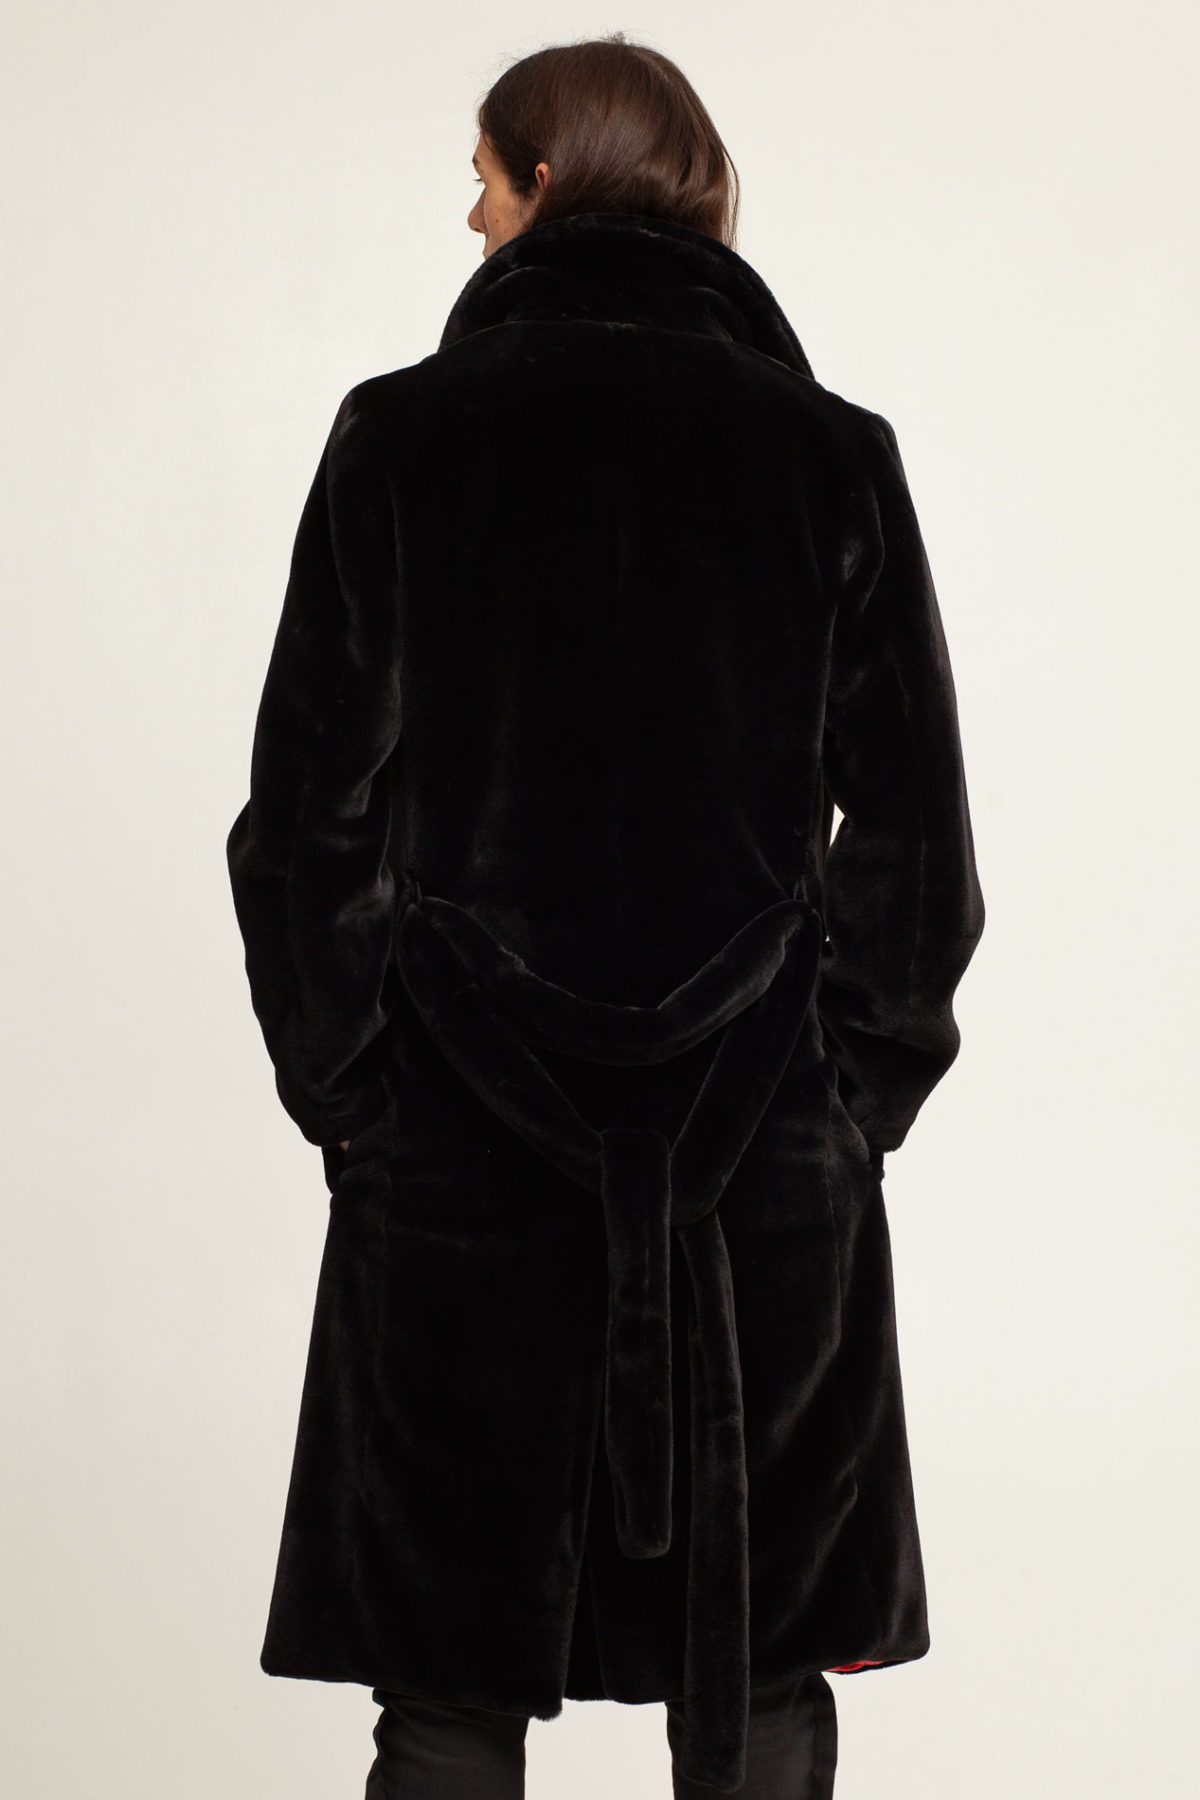 Men's black warm faux fur coat by FINCH, bespoke | worldwide shipping